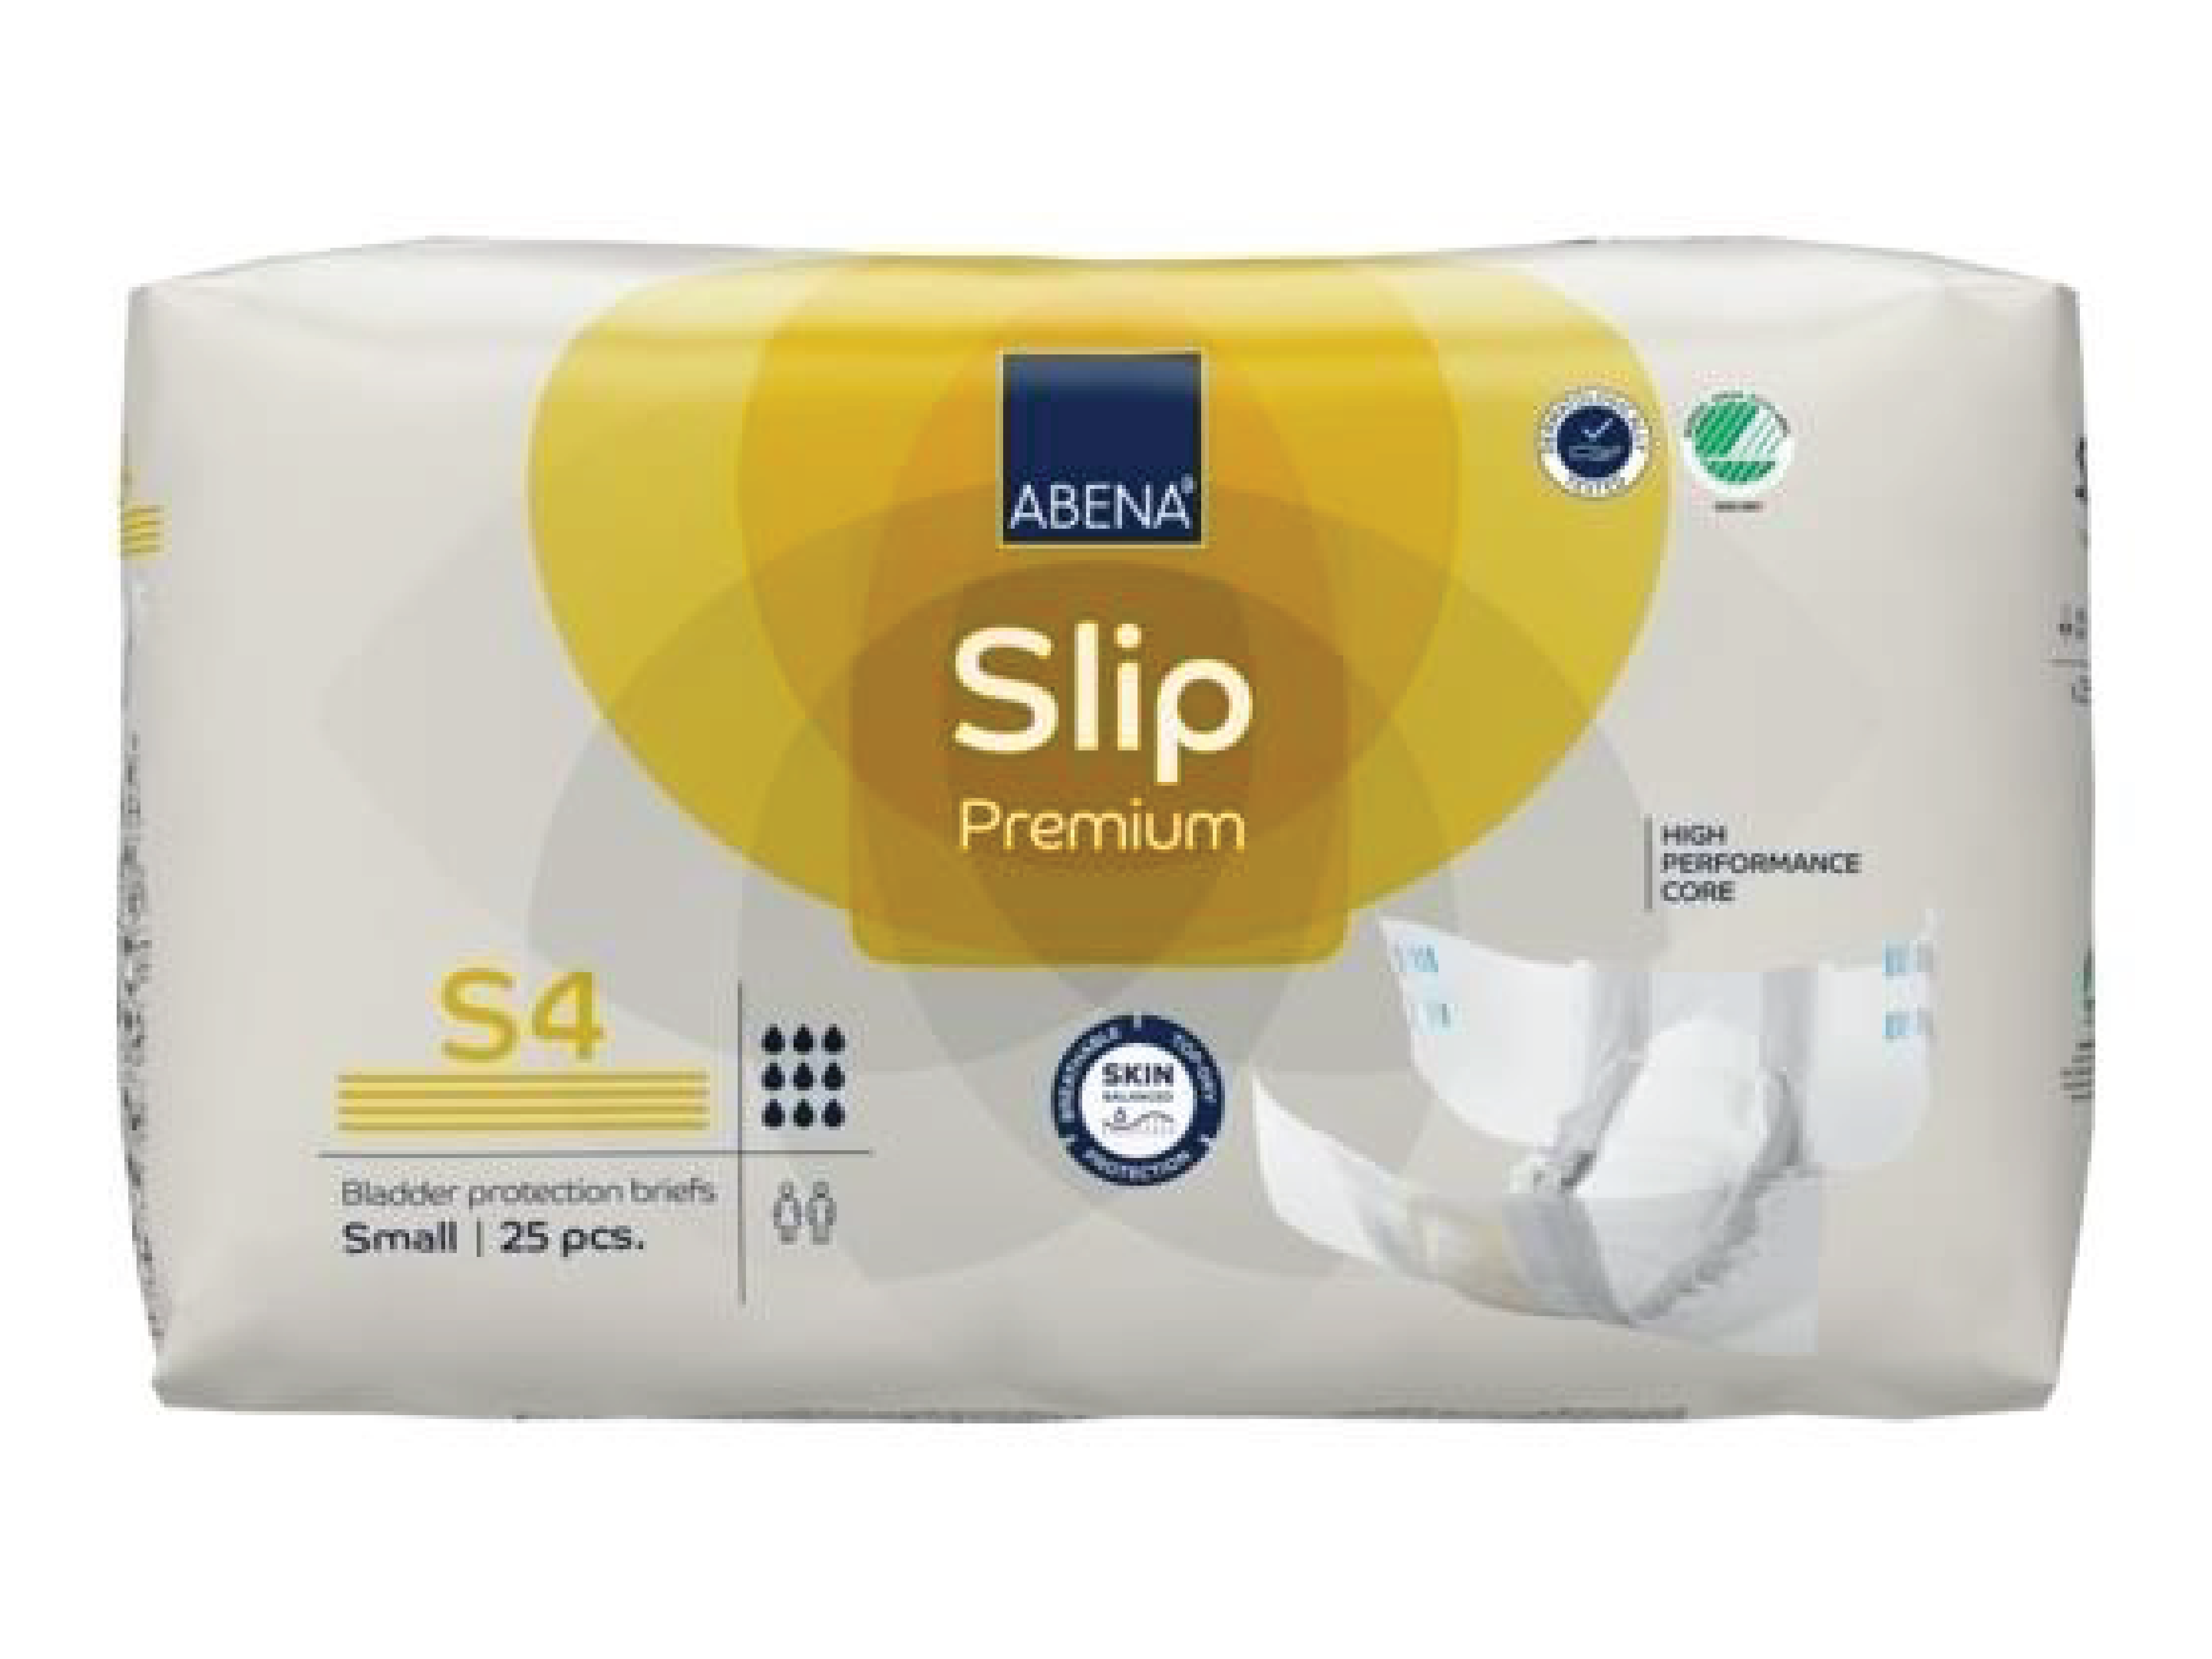 Abena Slip Premium S4, 25 stk